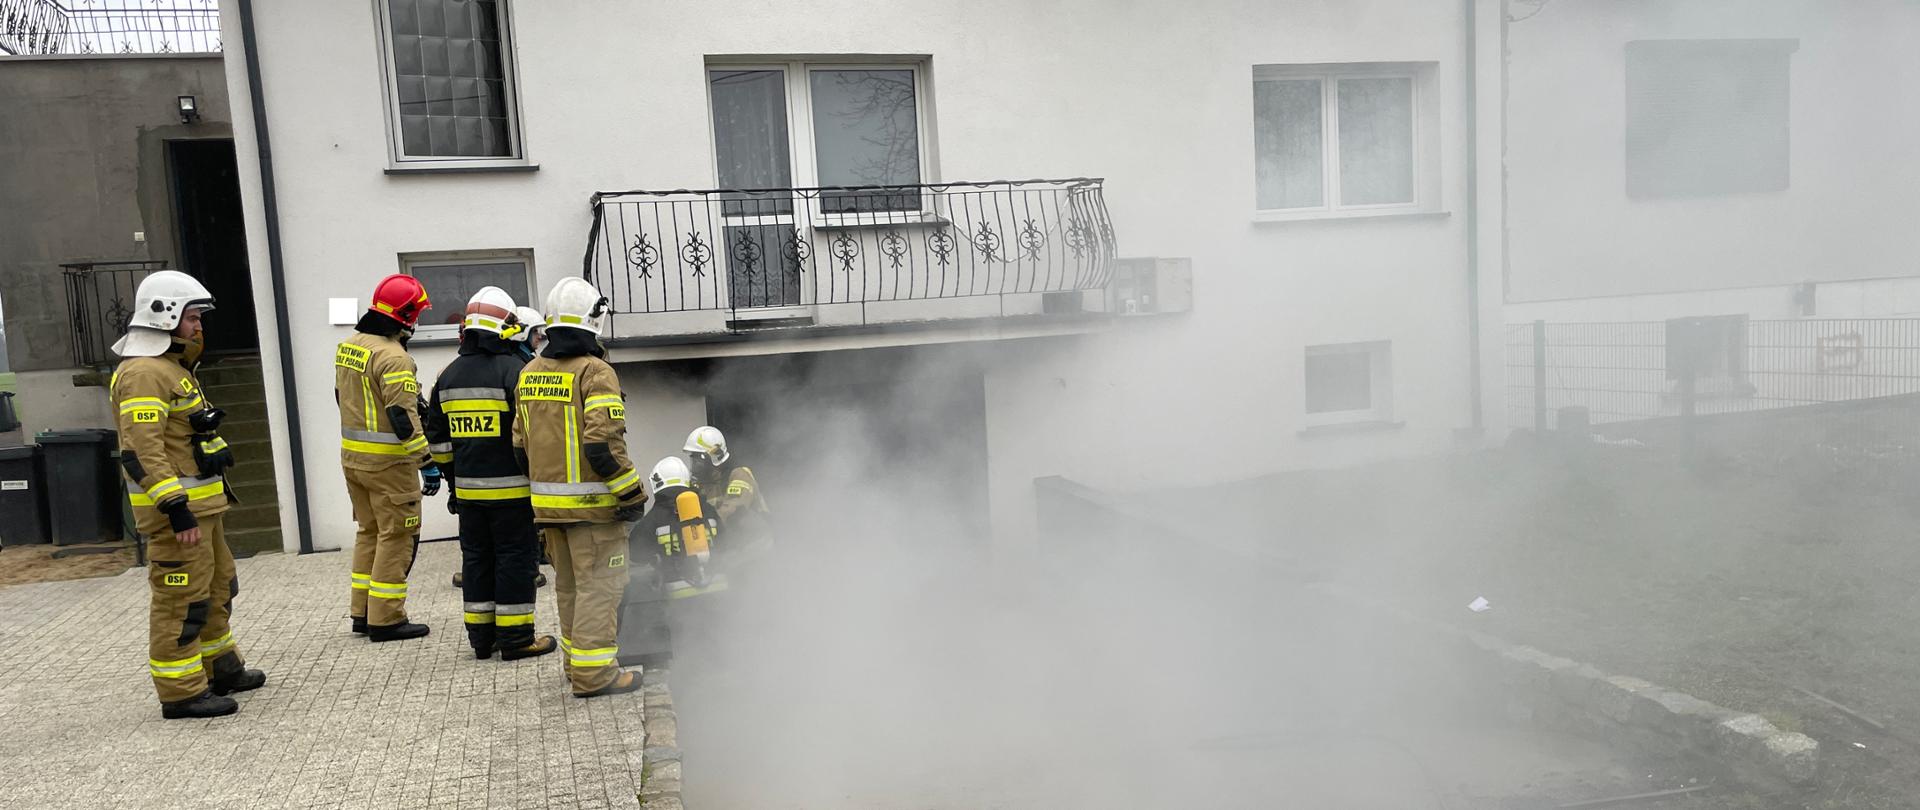 Strażacy stoją przy wejściu do garażu z którego wydobywa się dym